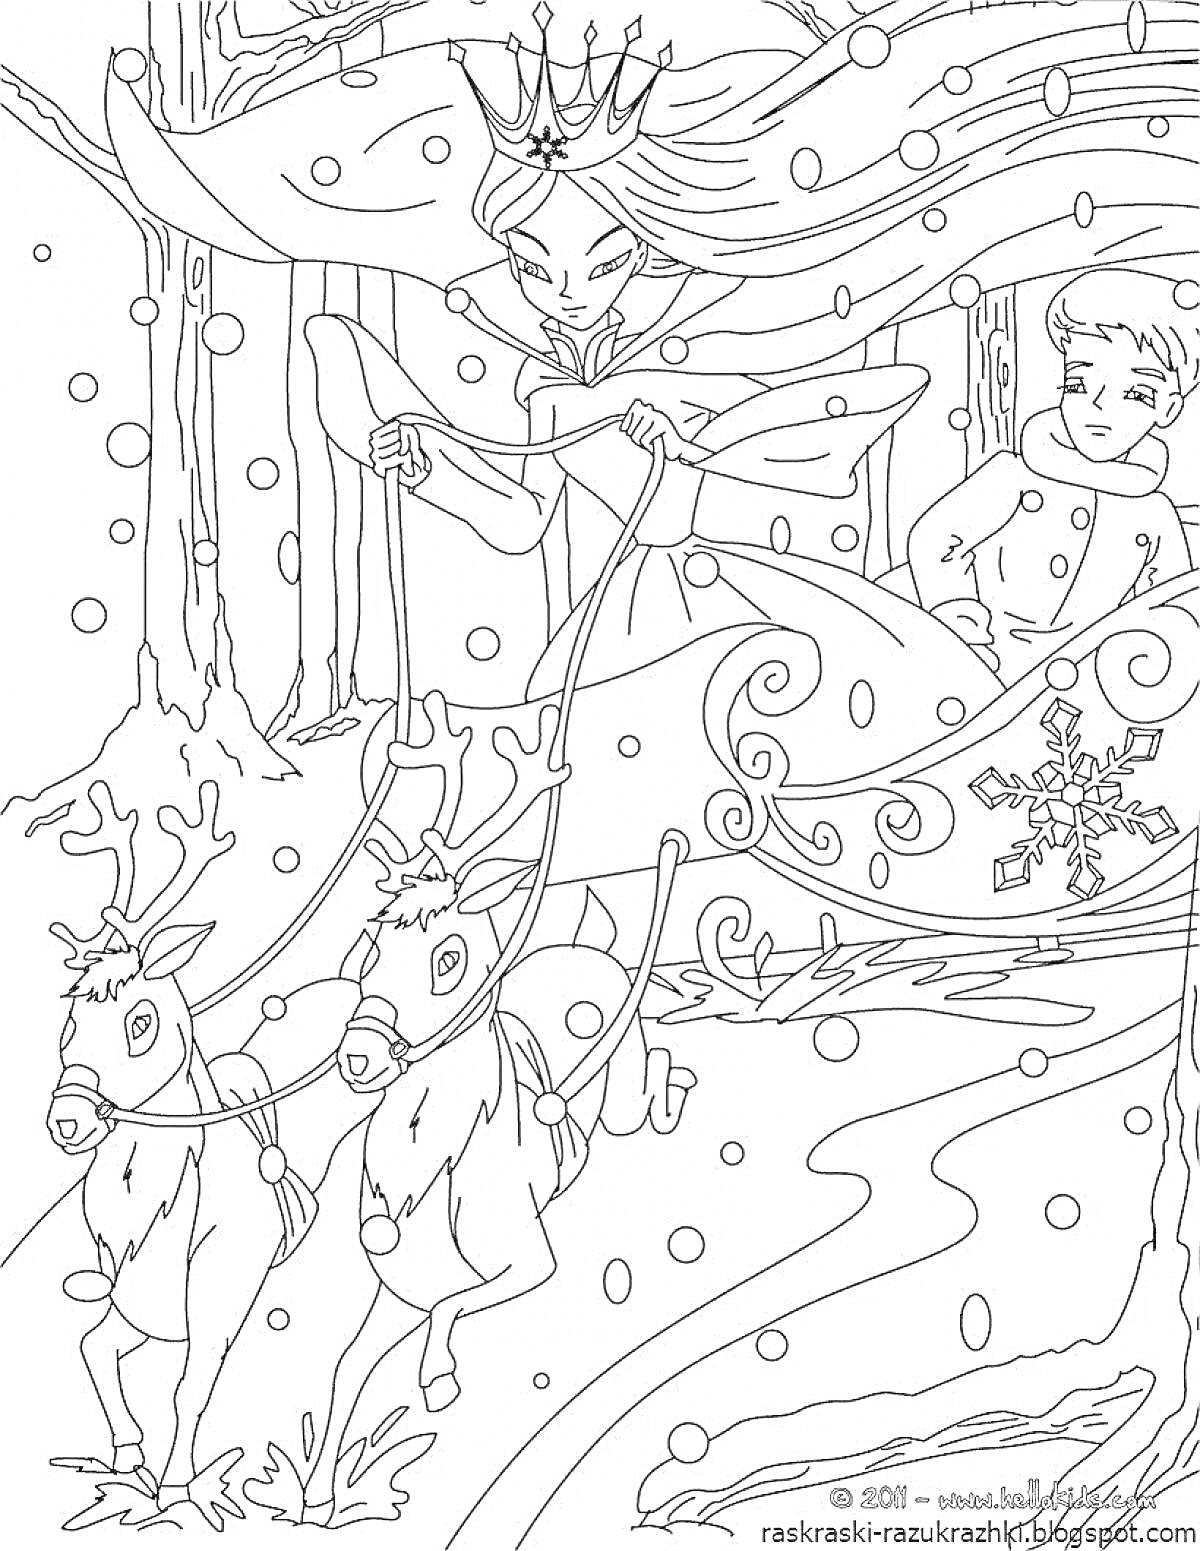 На раскраске изображено: Снежная королева, Девочка, Мальчик, Сани, Северные олени, Зима, Лес, Снег, Снежинки, Корона